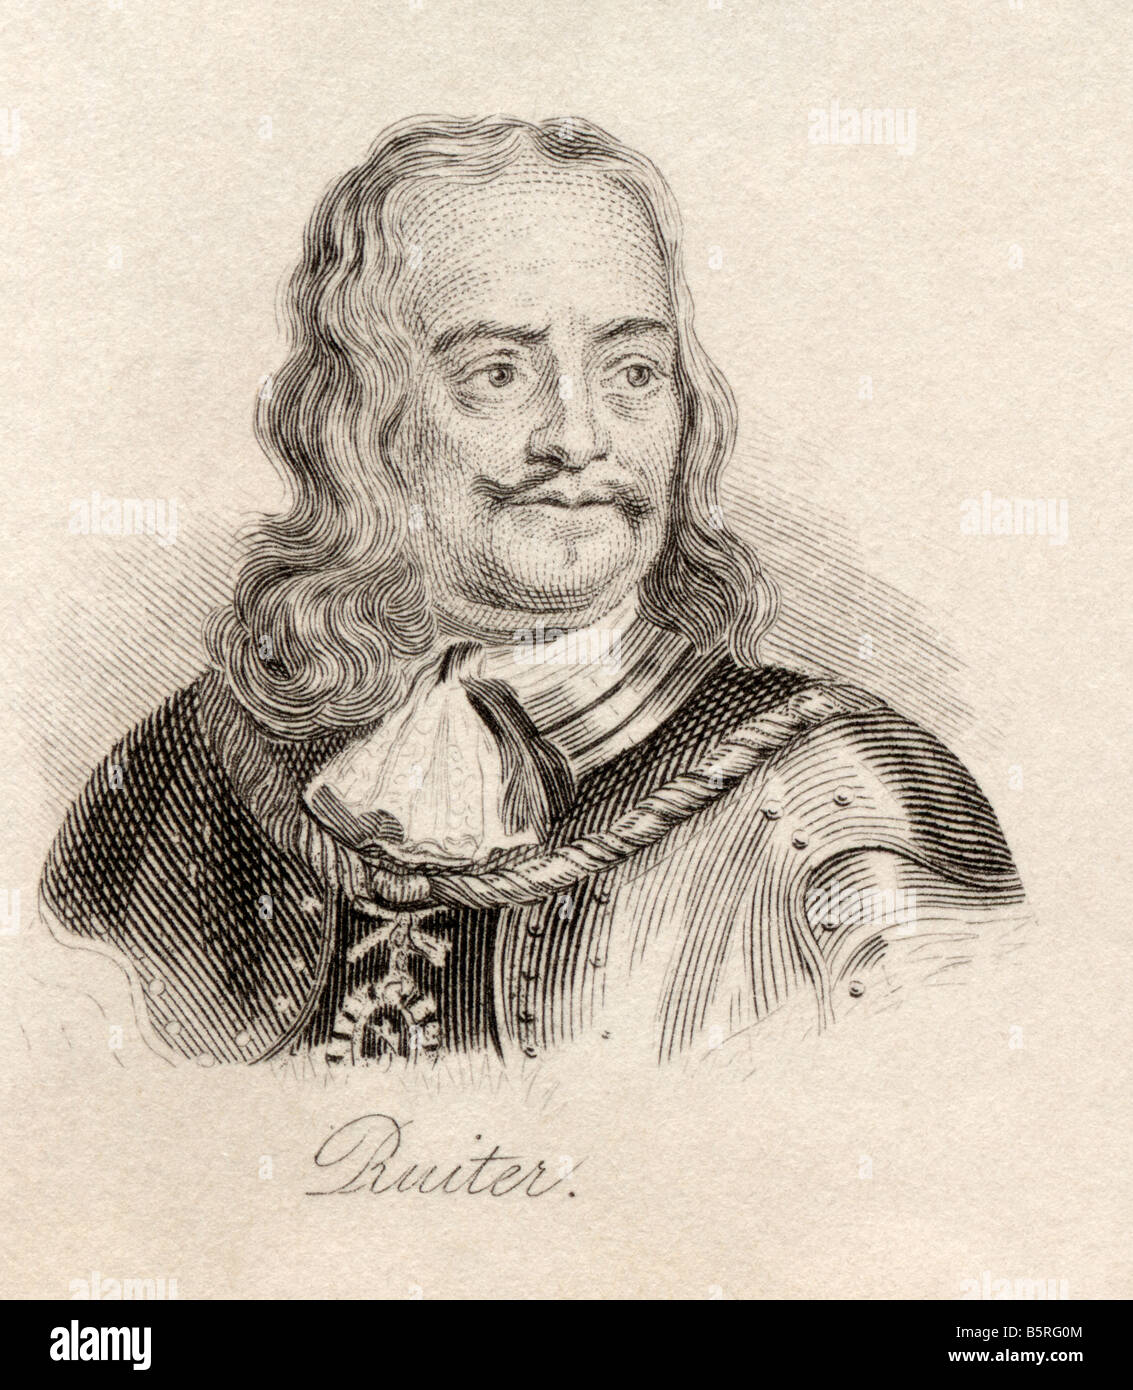 Michiel Adriaenszoon de Ruyter, 1607 - 1676. Ammiraglio olandese. Dal libro Crabbe's Historical Dictionary, pubblicato nel 1825. Foto Stock